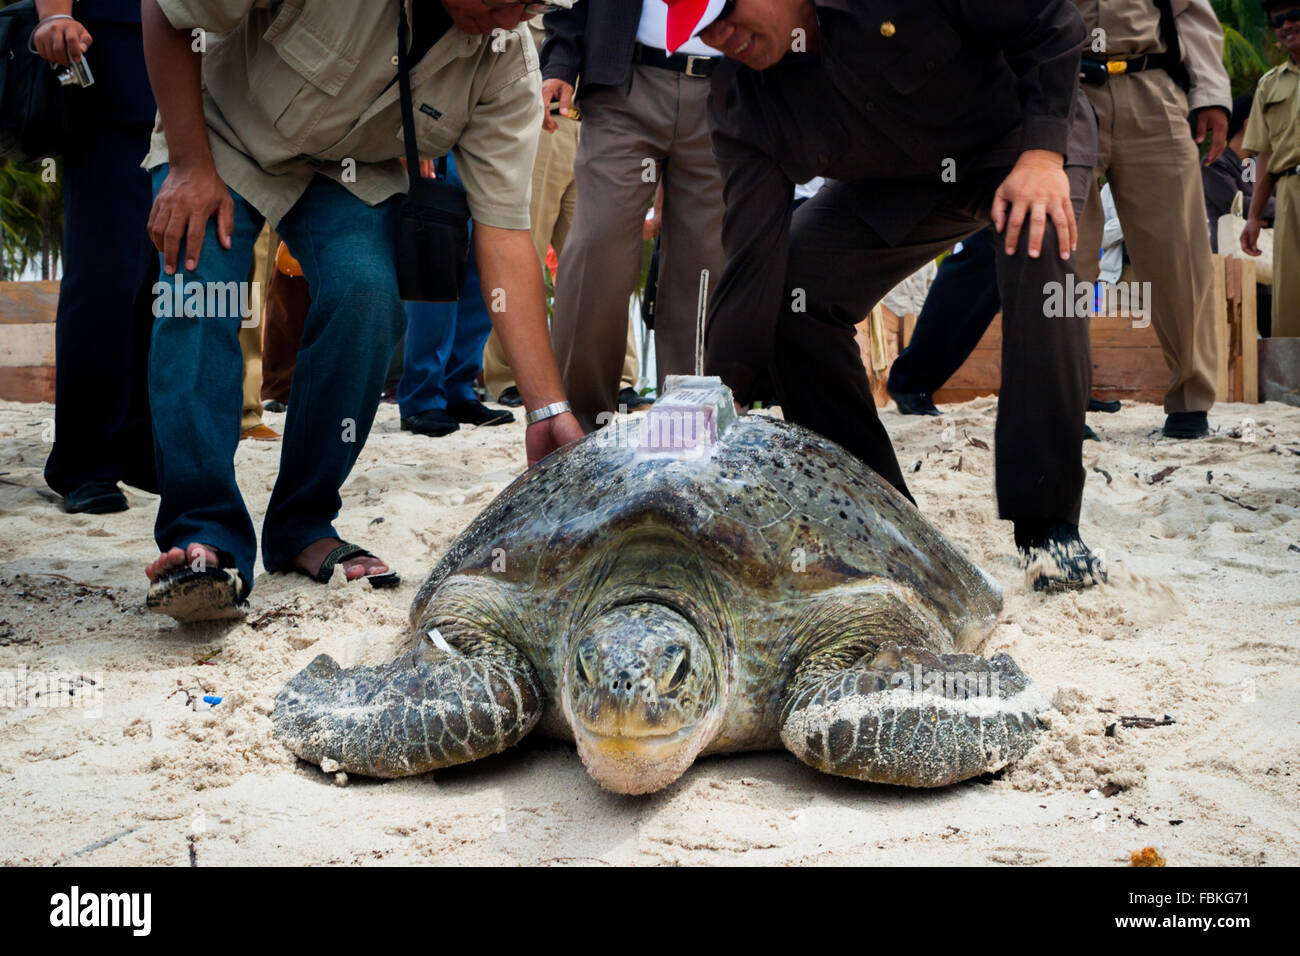 Les conservateurs et les représentants du gouvernement ont relâché une tortue de mer verte avec un dispositif de suivi par satellite installé sur sa carapace. Banque D'Images